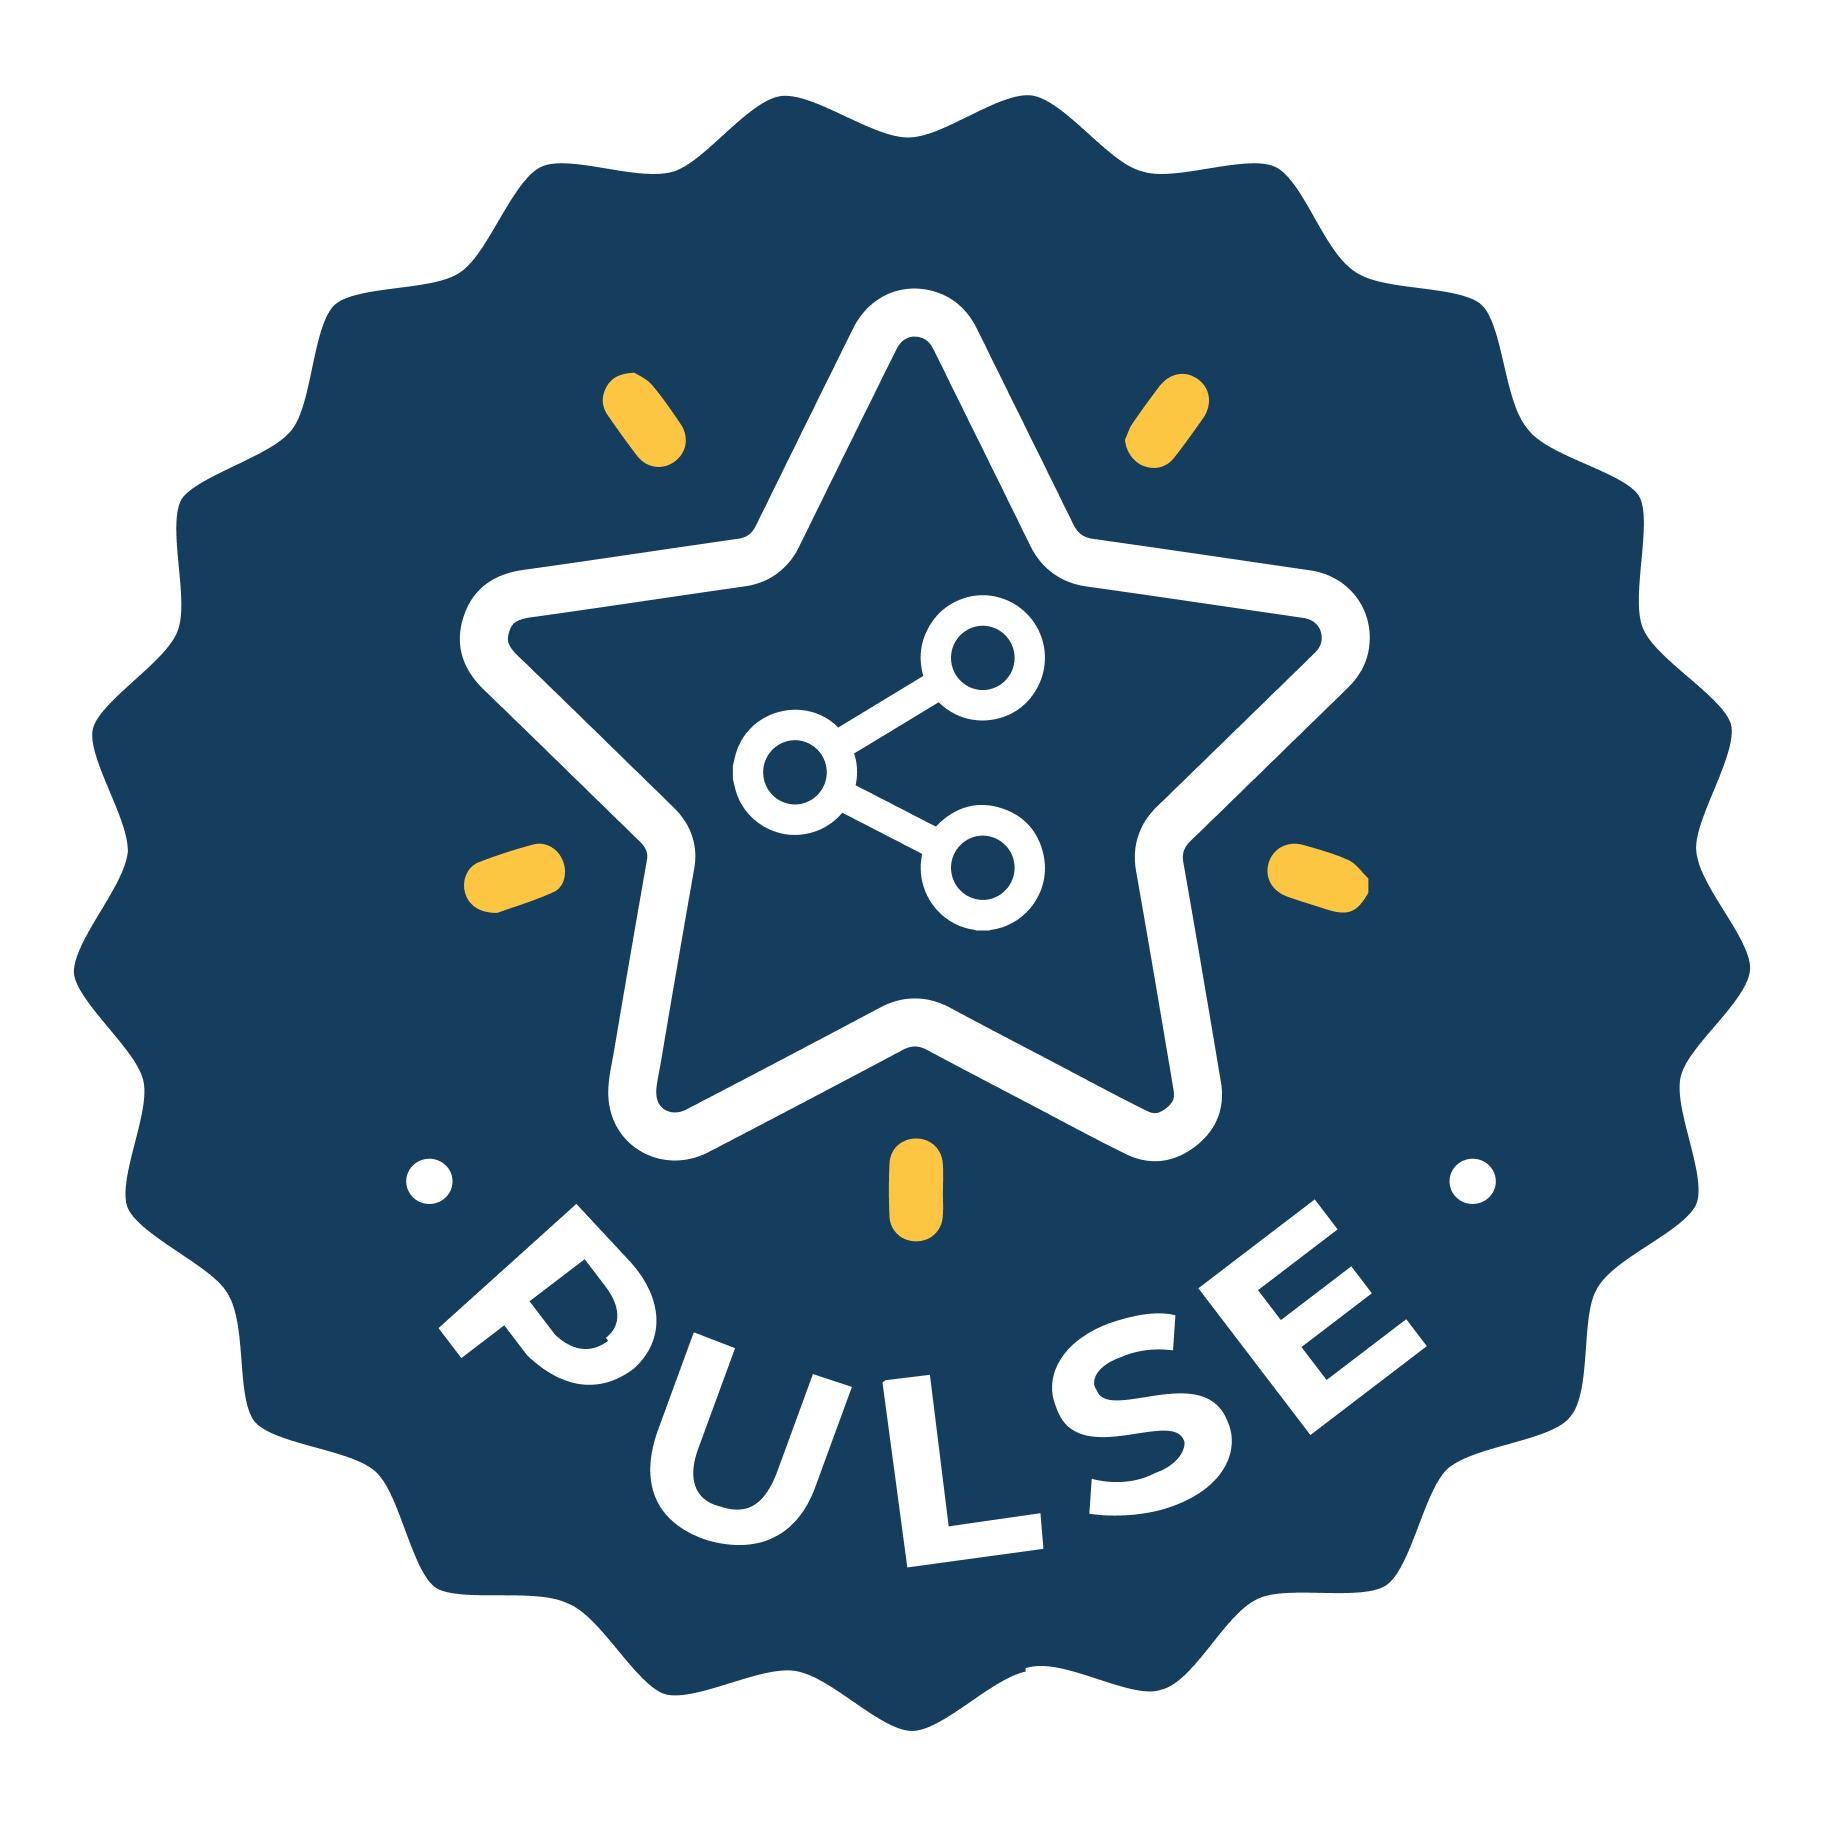 Pulse Social Rockstar!